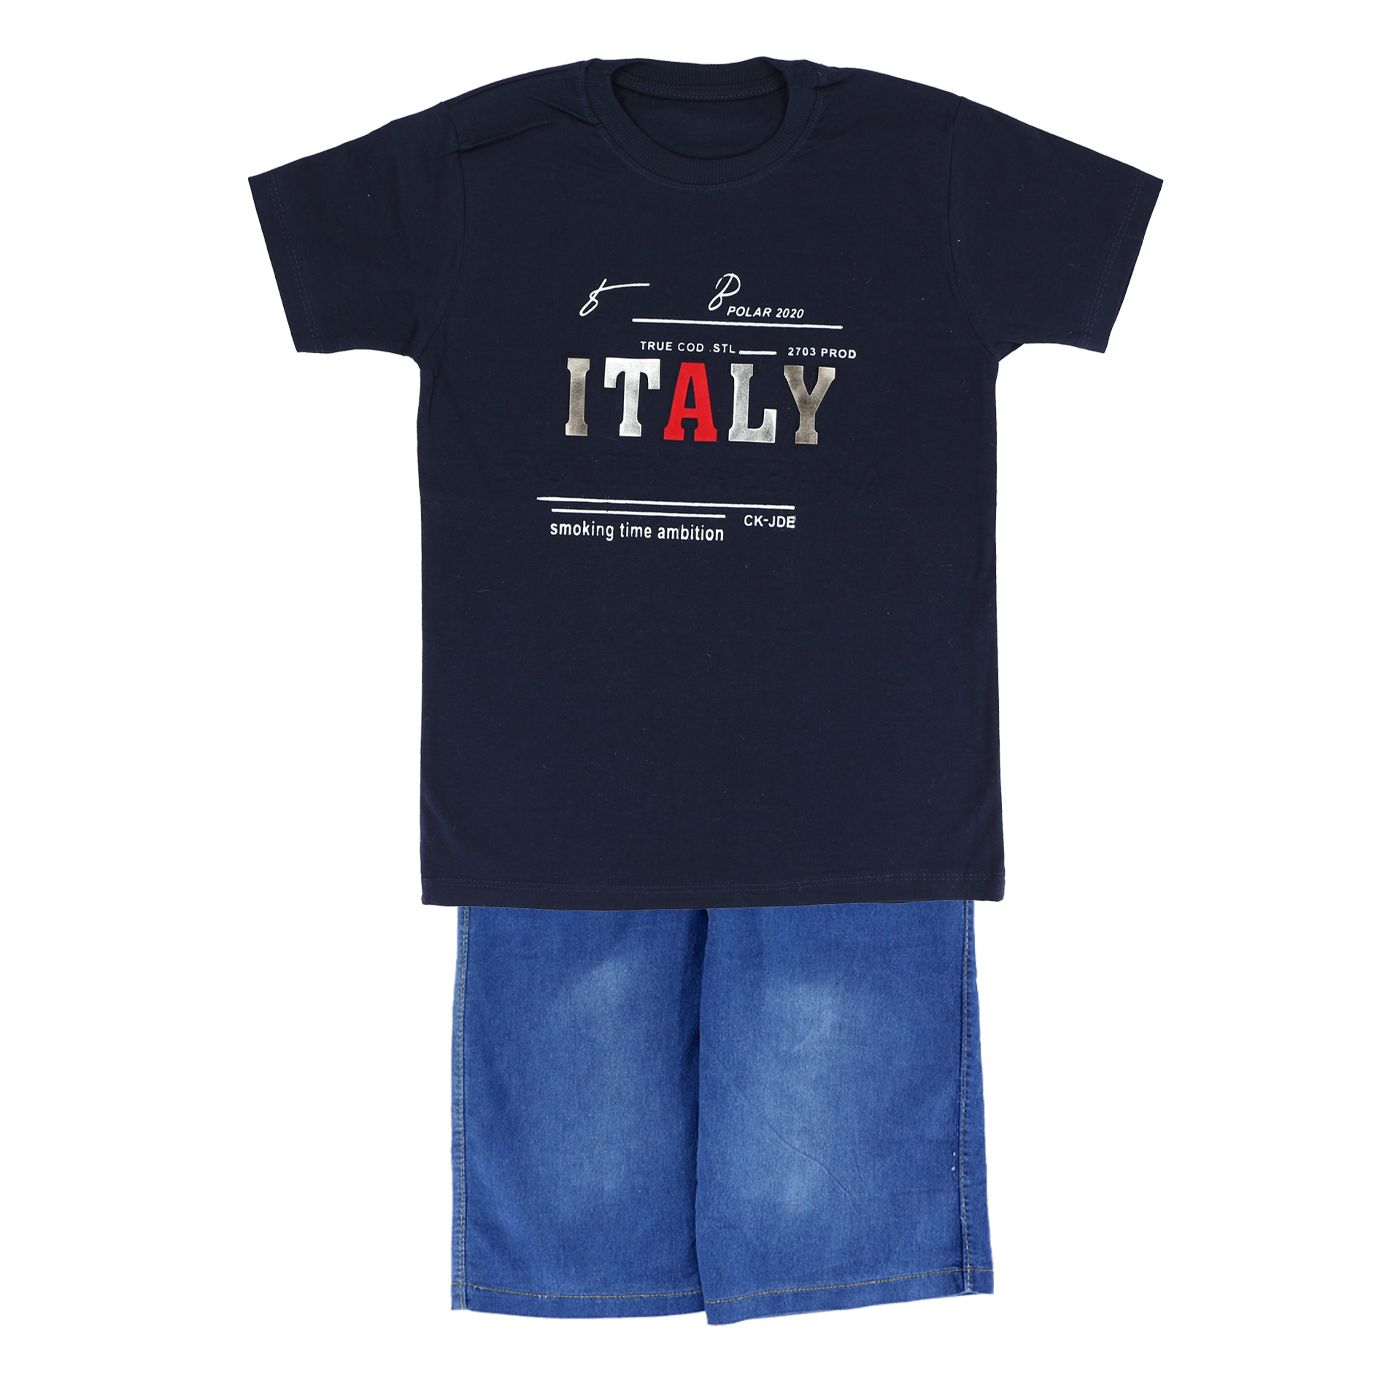  ست تی شرت و شلوارک پسرانه طرح italy کد 01-125 -  - 2